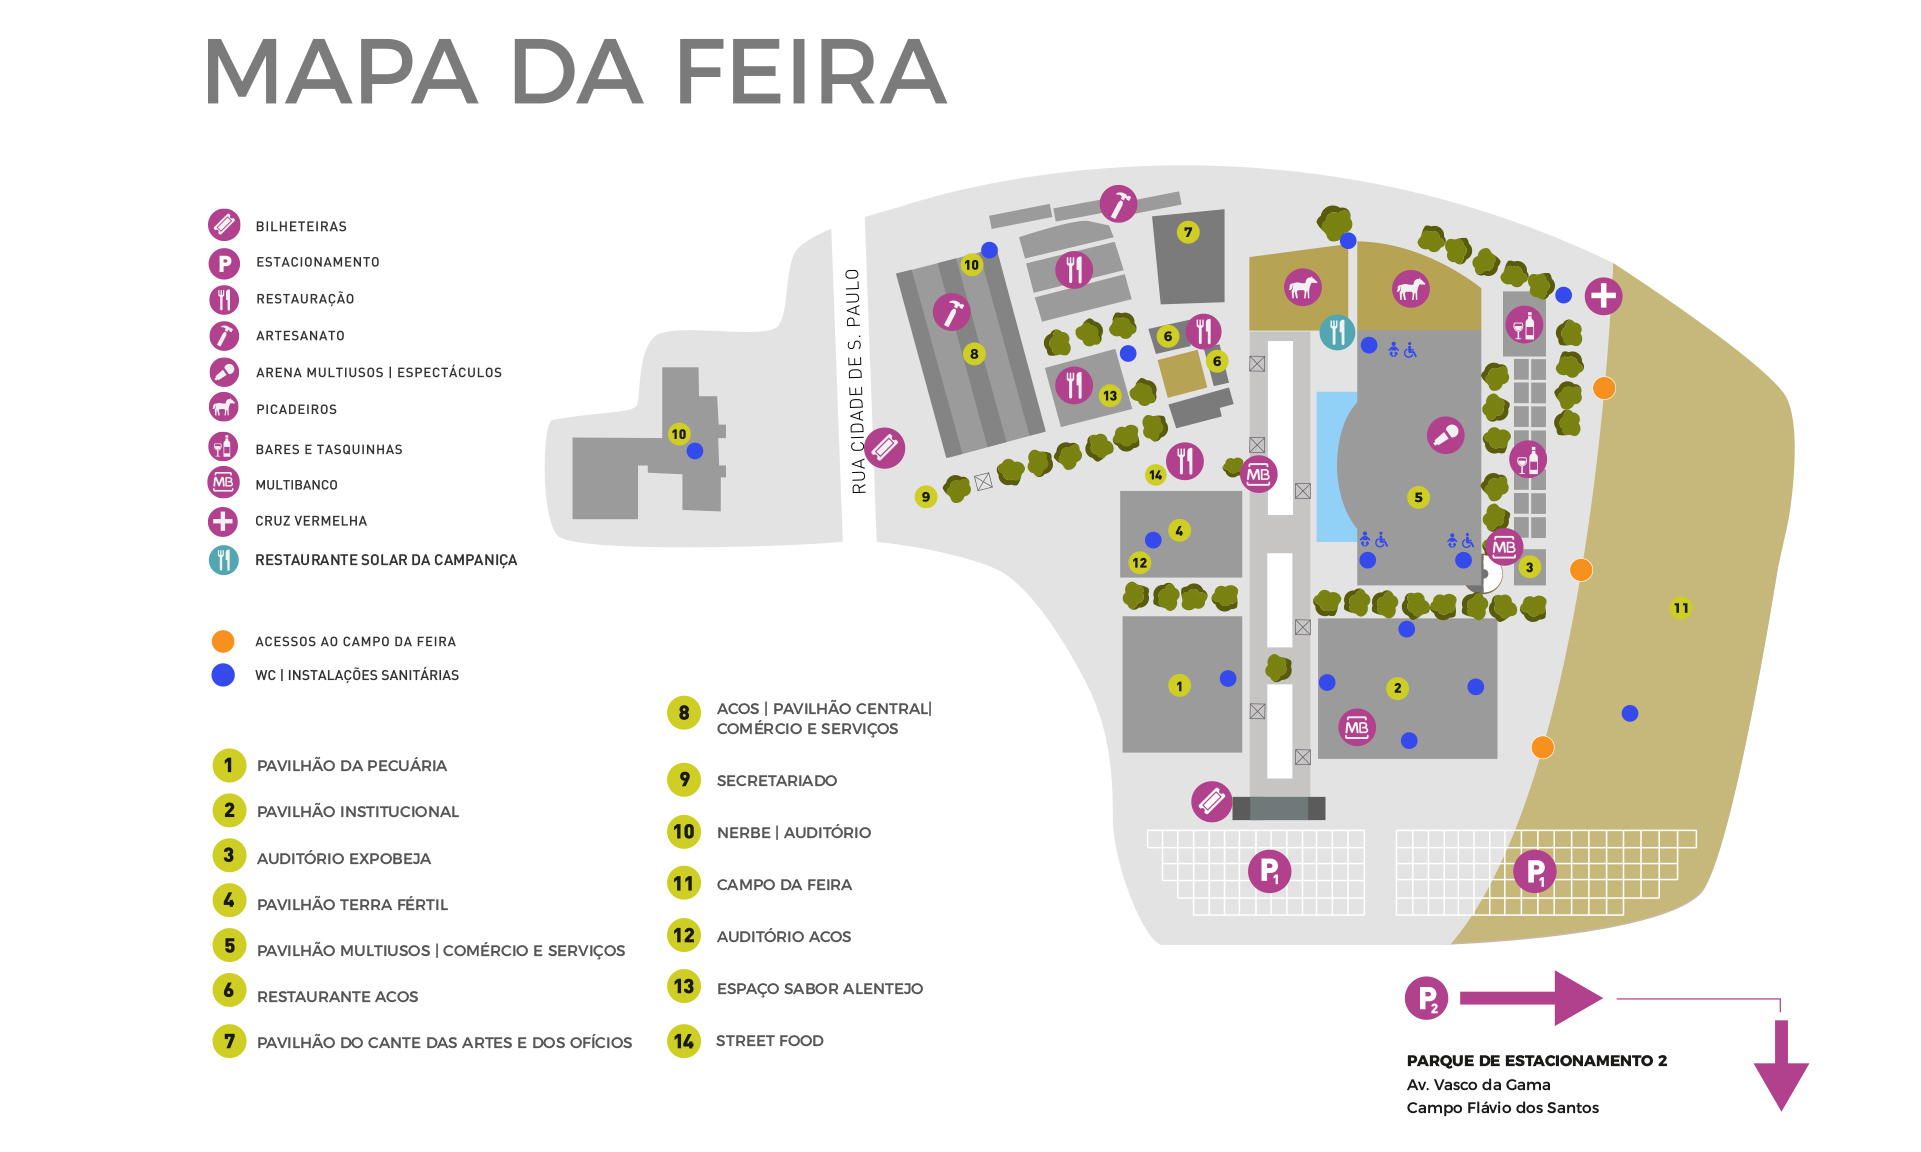 Mapa da feira